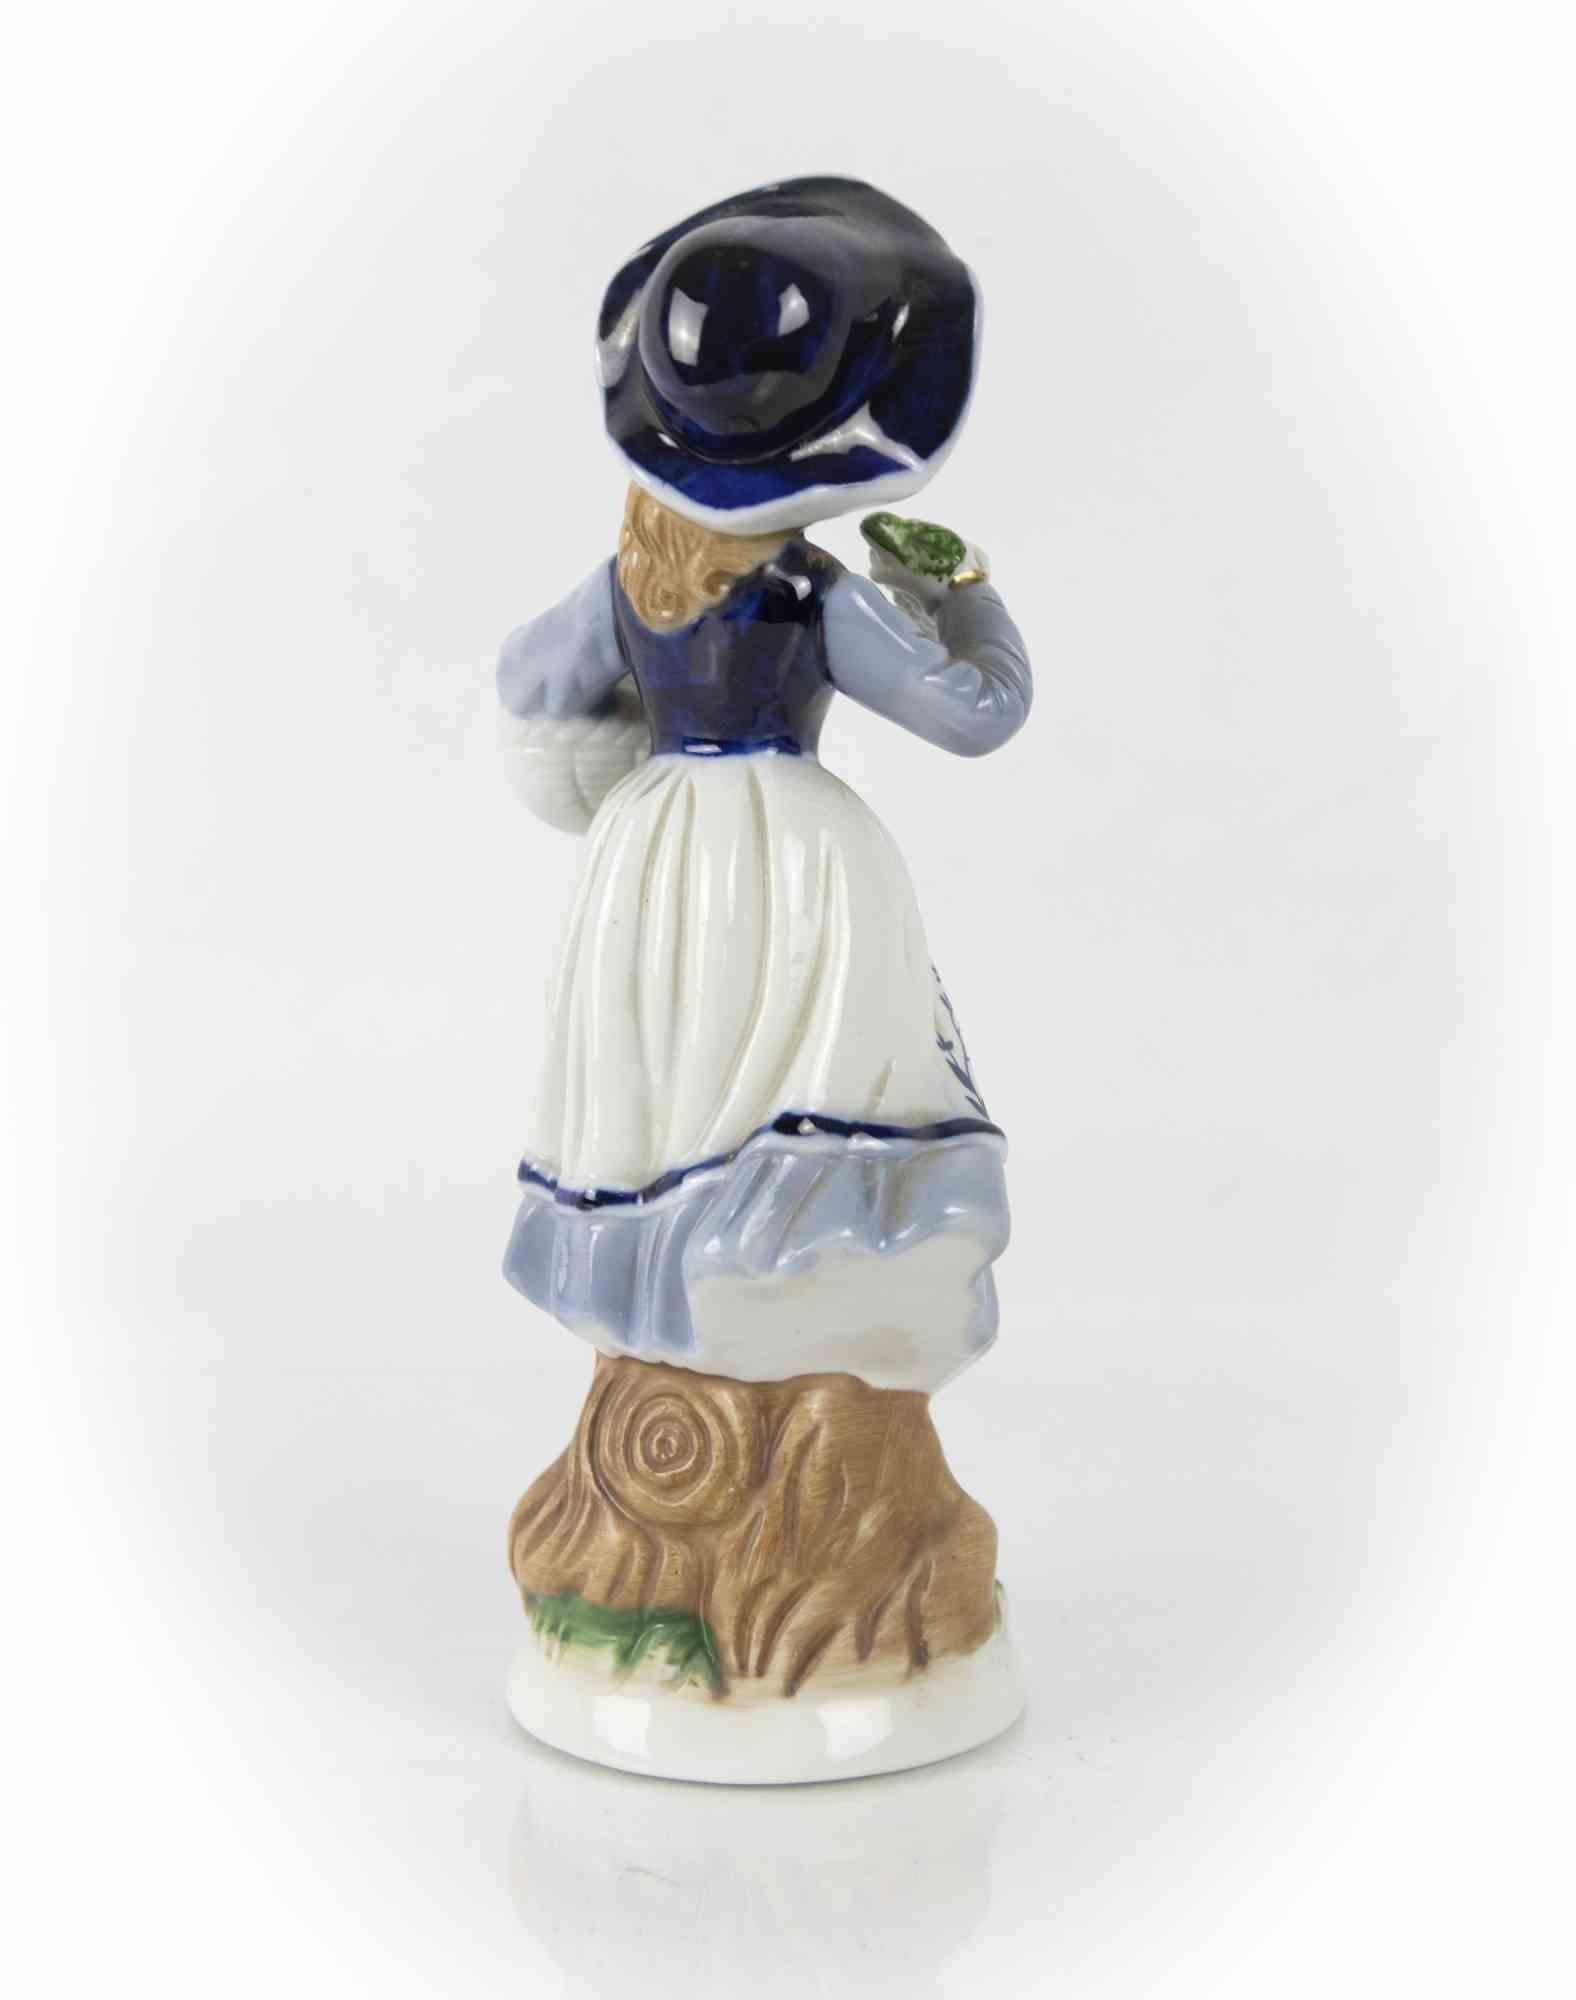 La dame en porcelaine est un objet décoratif original réalisé dans la moitié du XXe siècle.

Marqué sous la base.